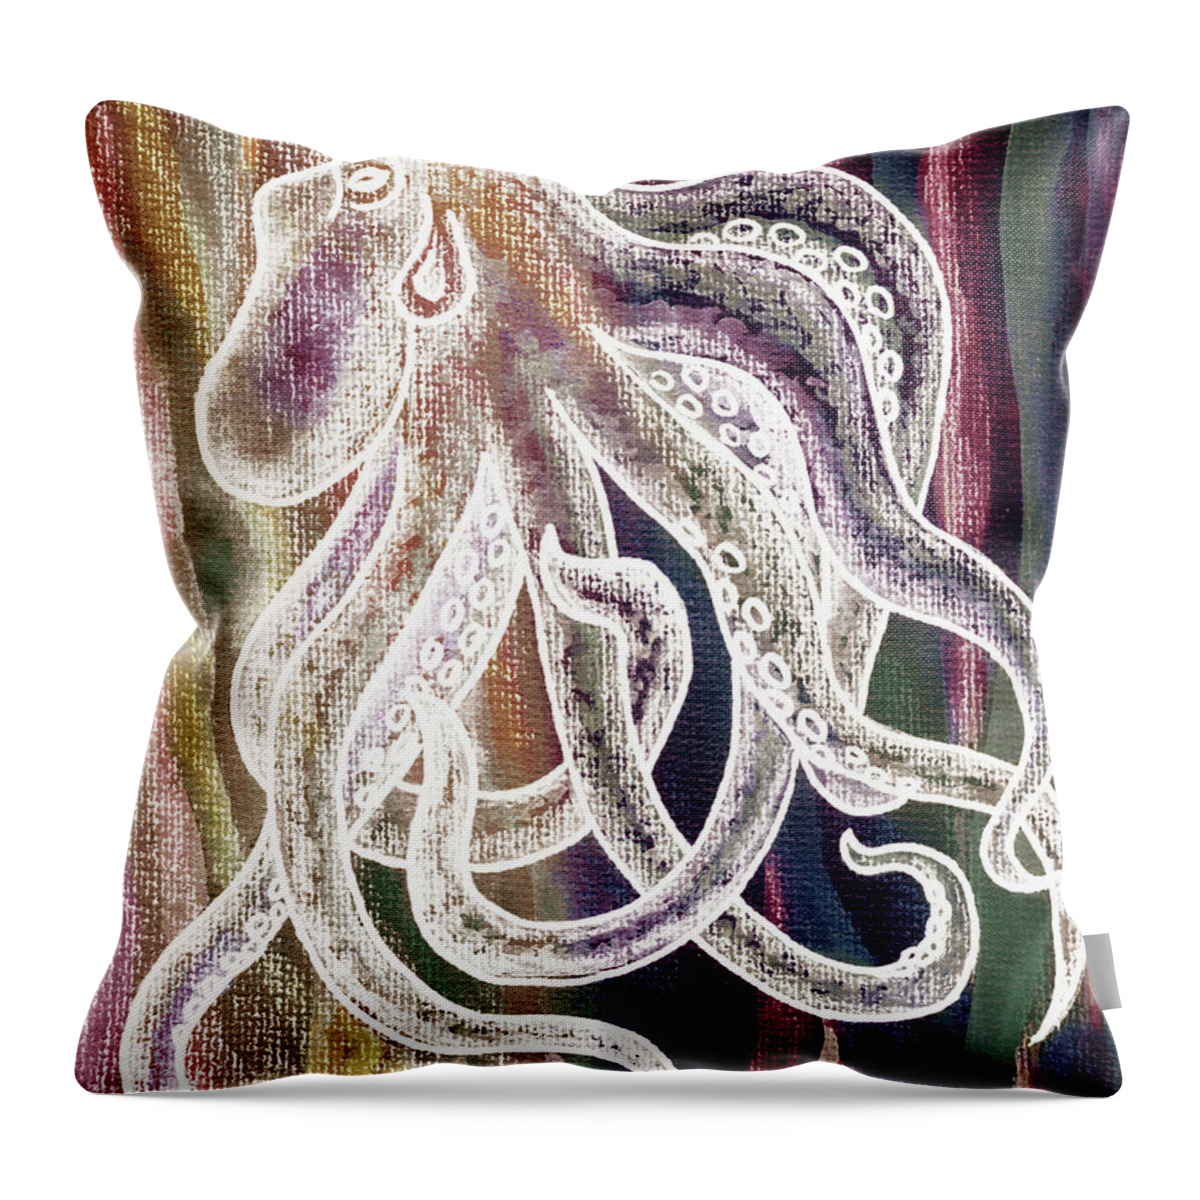 Octopus Throw Pillow featuring the painting Warm Beige Deep Red Sea Watercolor Octopus Beach Art by Irina Sztukowski